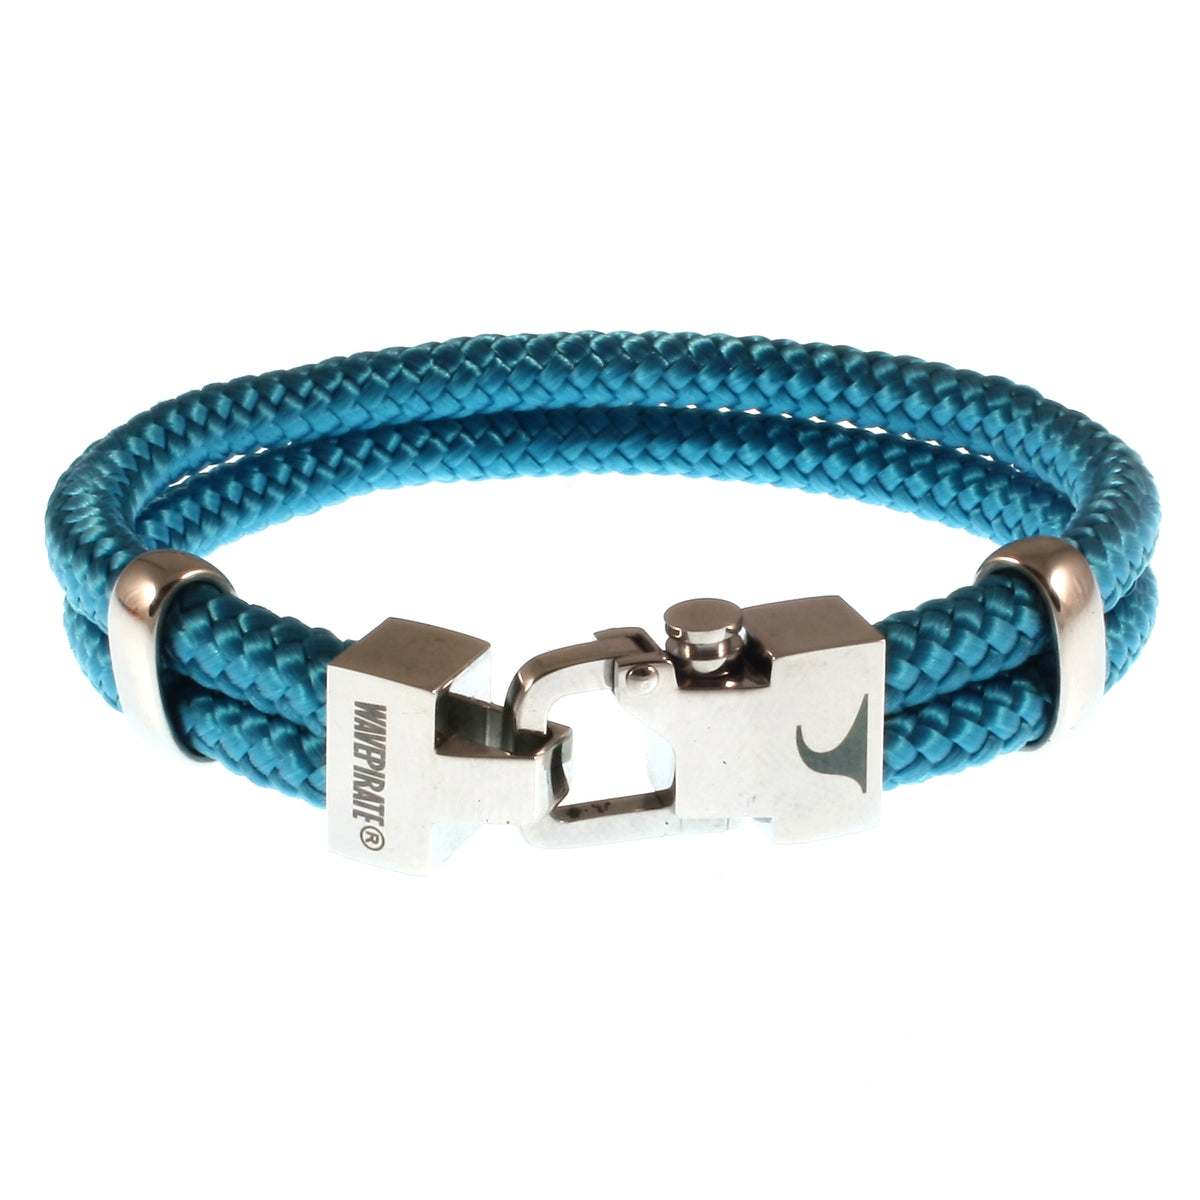 Herren-Segeltau-Armband-Turn-blau-geflochten-Edelstahlverschluss-vorn-wavepirate-shop-st